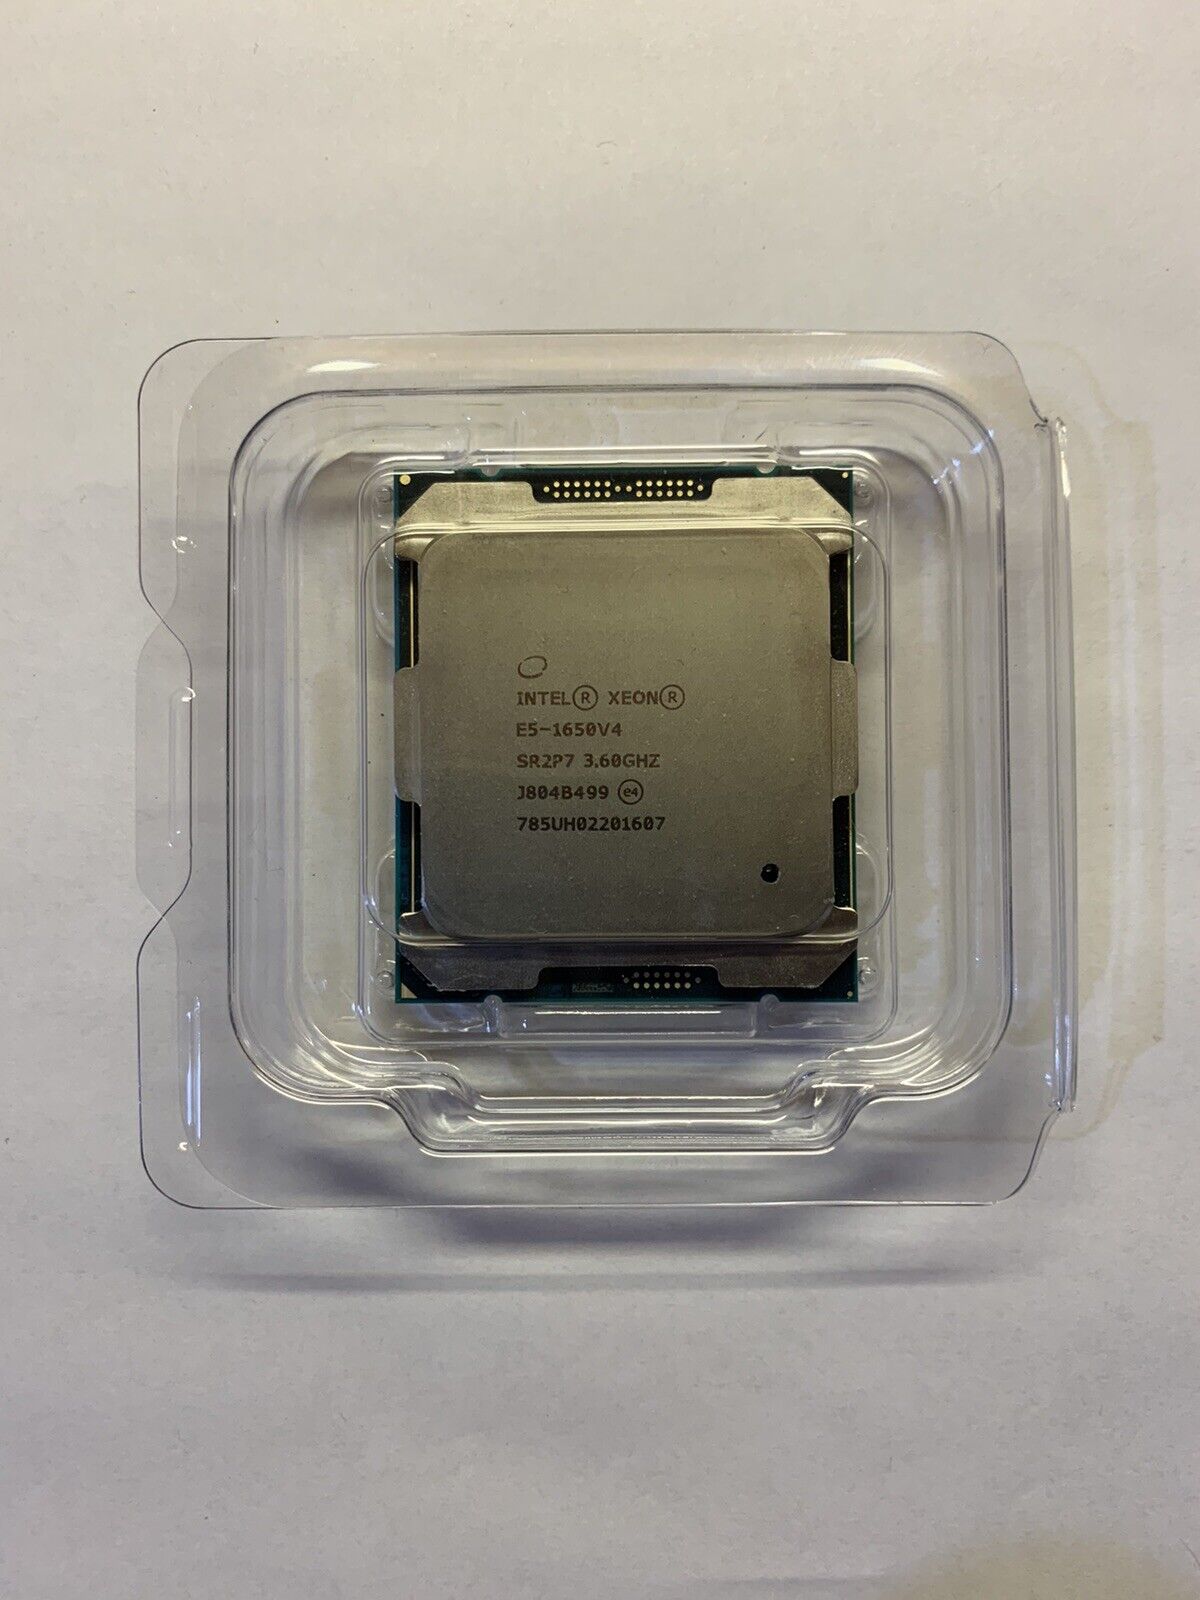 Intel Xeon E5-1650 V4 3.60GHz 6-Core Processor CPU  SR2P7  LGA 2011-3  Broadwell